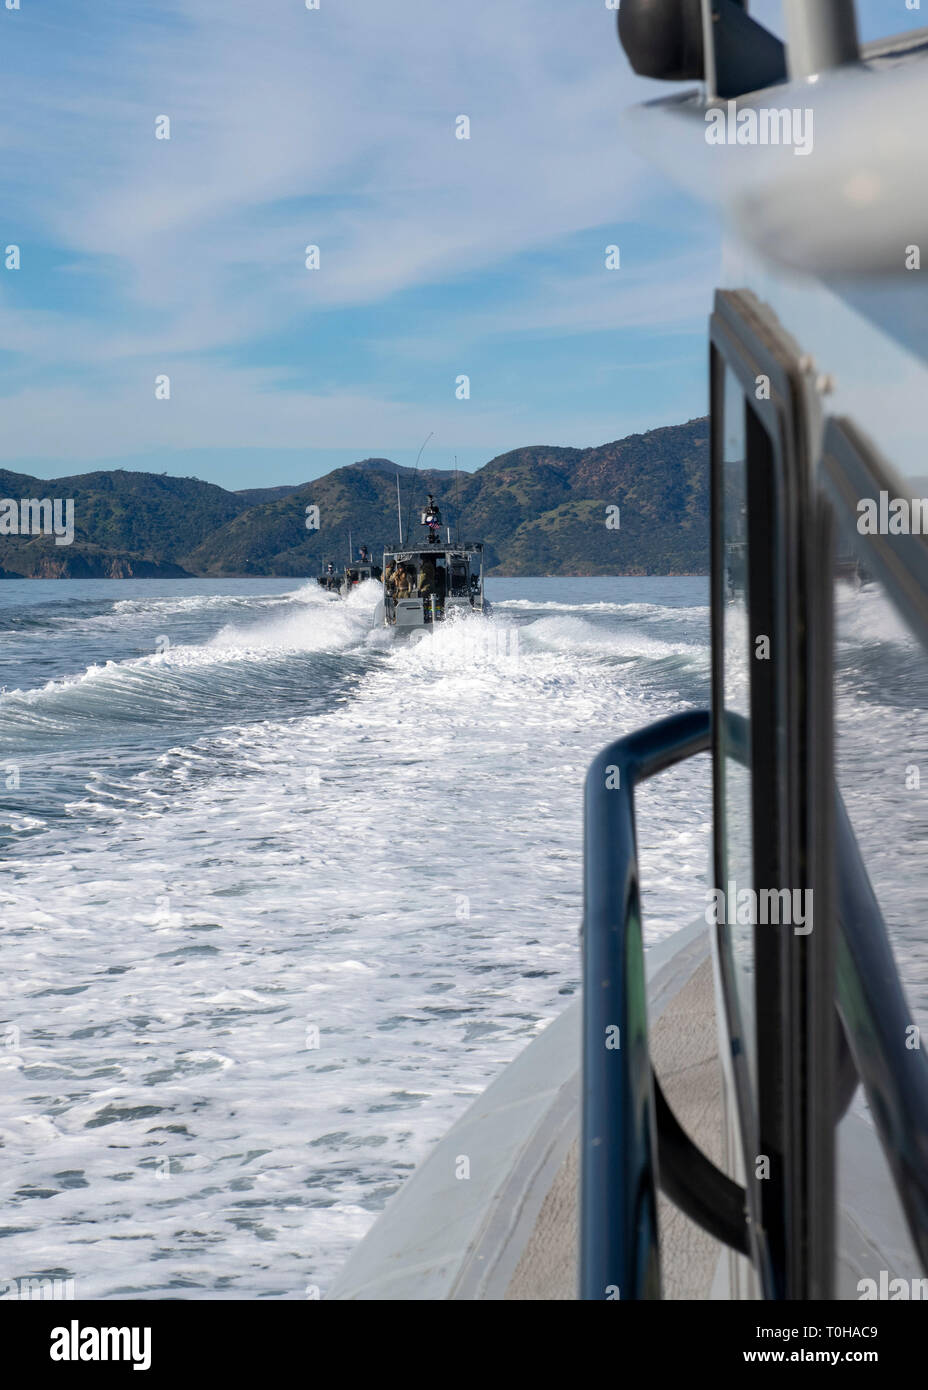 190315-N-RU084-1002 OXNARD, Californie. (Mar. 15, 2019) - L'équipe de construction sous-marine de Seabees (2 UCT-2) et de marins de la rivière côtière escadrons (CRS) 3 et 11 en transit à l'île de Santa Rosa, Californie, en 34 pieds de bateaux de patrouille pour effectuer des levés hydrographiques et de la jetée de l'évaluation des dommages de la formation dans le cadre de l'exercice Pacific Blitz 2019 (PacBlitz19). Cette formation est la première fois UCT-2 a travaillé avec le SRC et essais leur capacité de cartographier les zones d'atterrissage pour petites embarcations permettant un appui continu à la Marine et du corps des opérations. PacBlitz19 fournit des réalistes, pertinents nécessaires de formation fo Banque D'Images